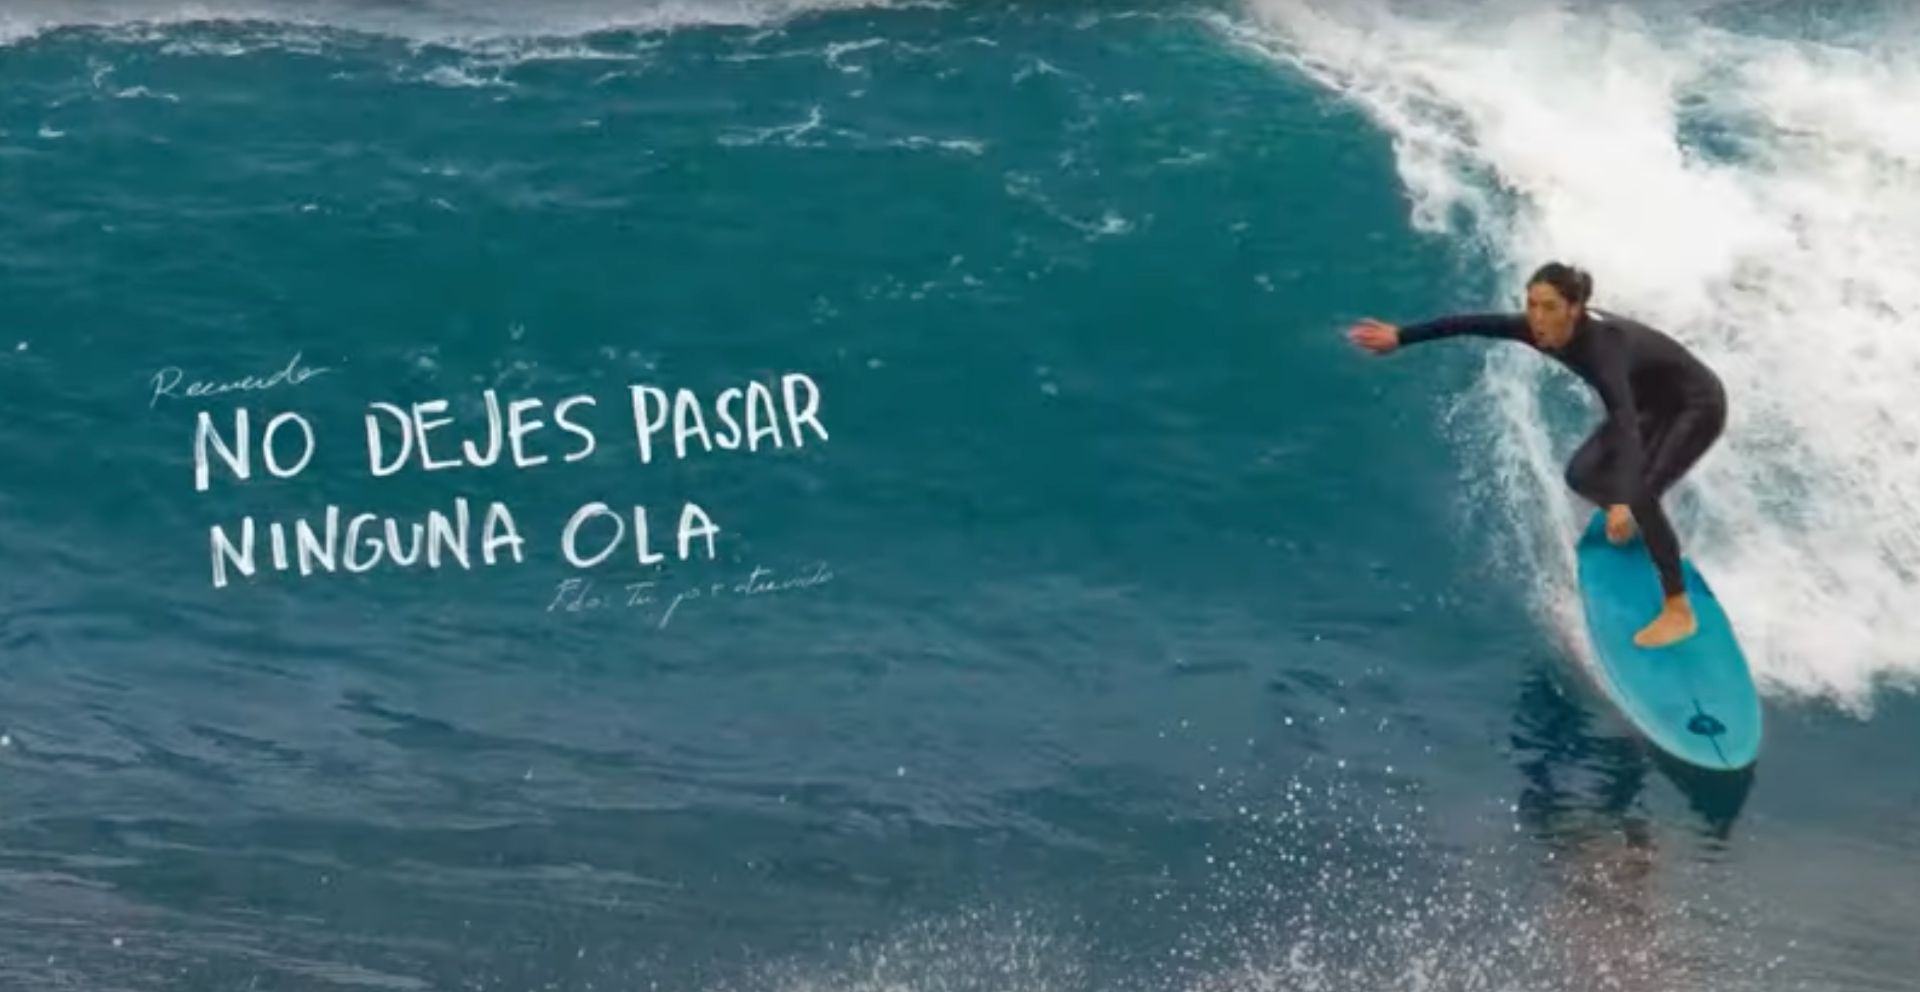 La surfista Garazi Sánchez, sobre una ola en una imagen del spot.